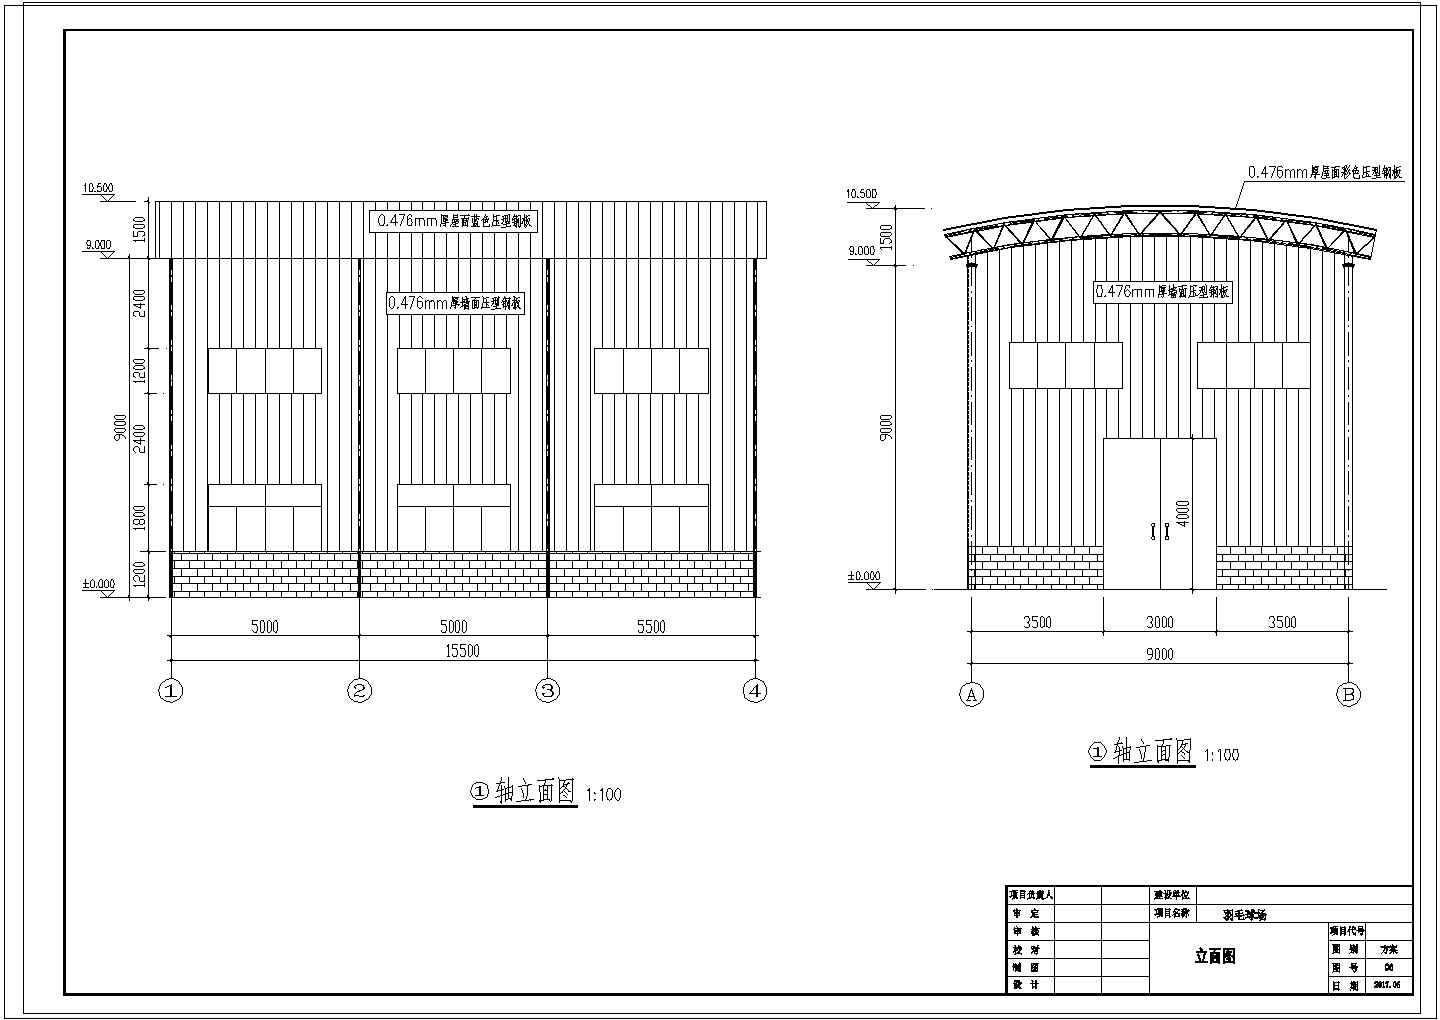 钢结构羽毛球场施工图纸 节点详细